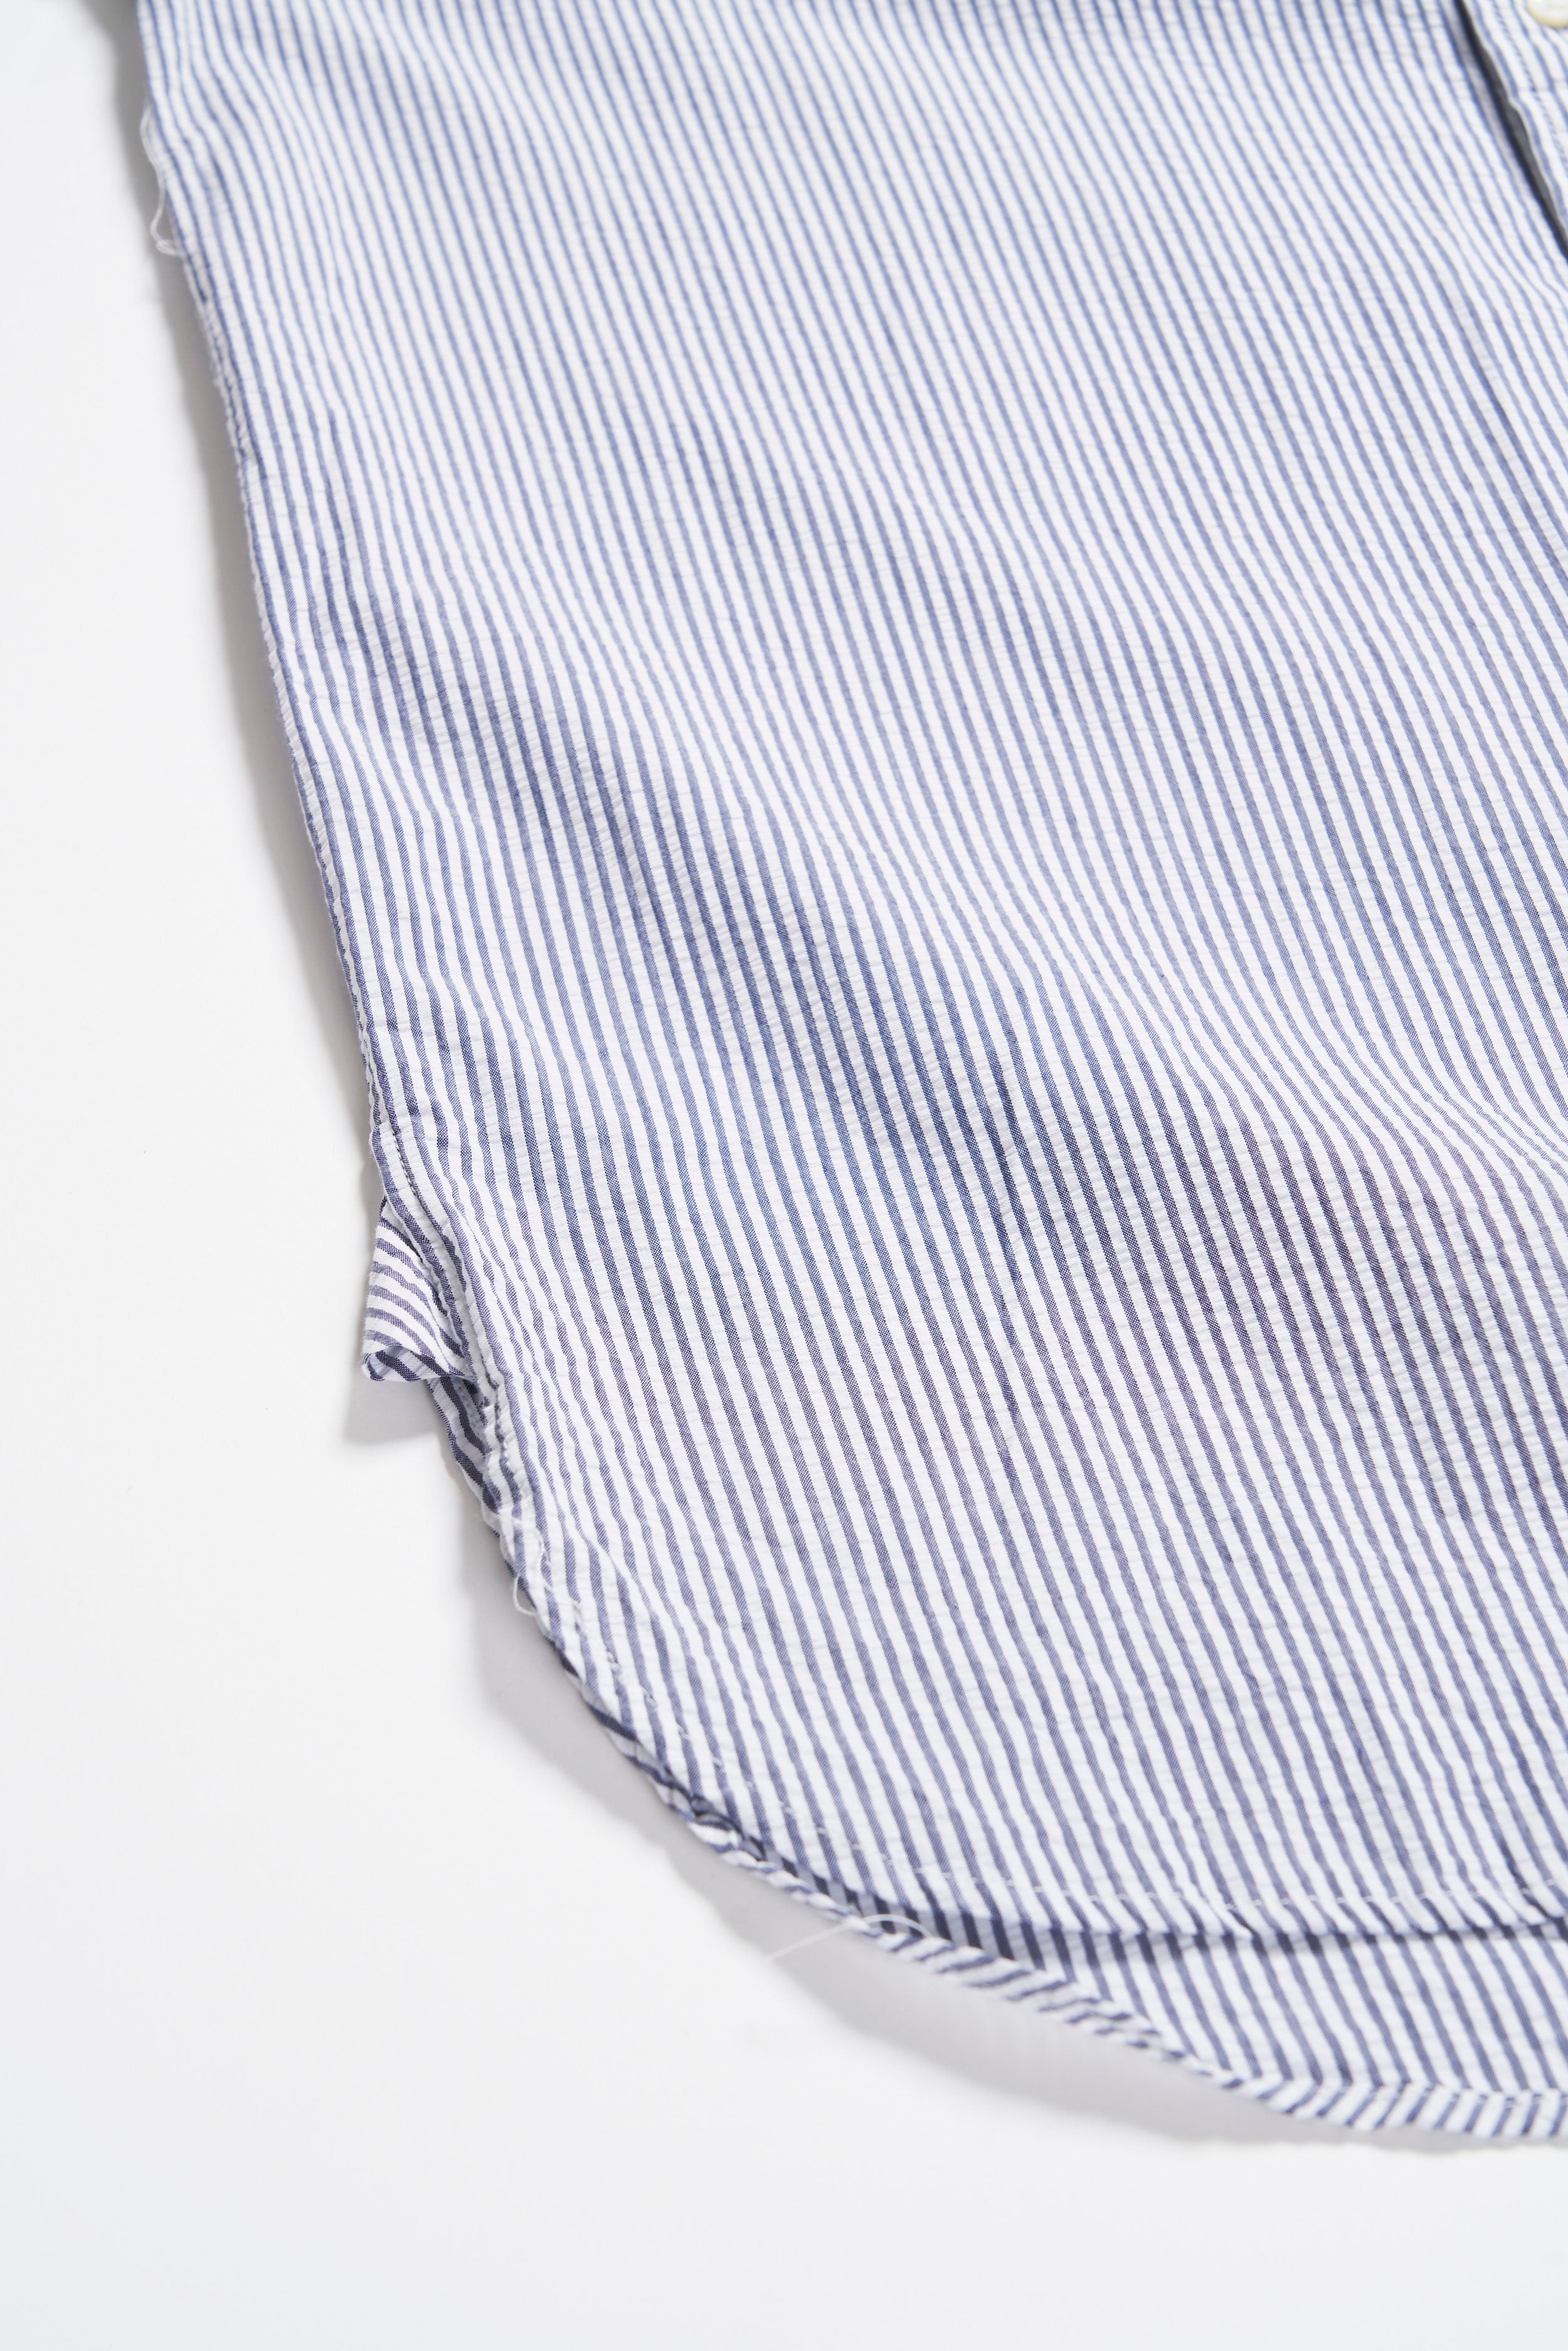 19 Century BD Shirt - Navy / White Cotton Seersucker